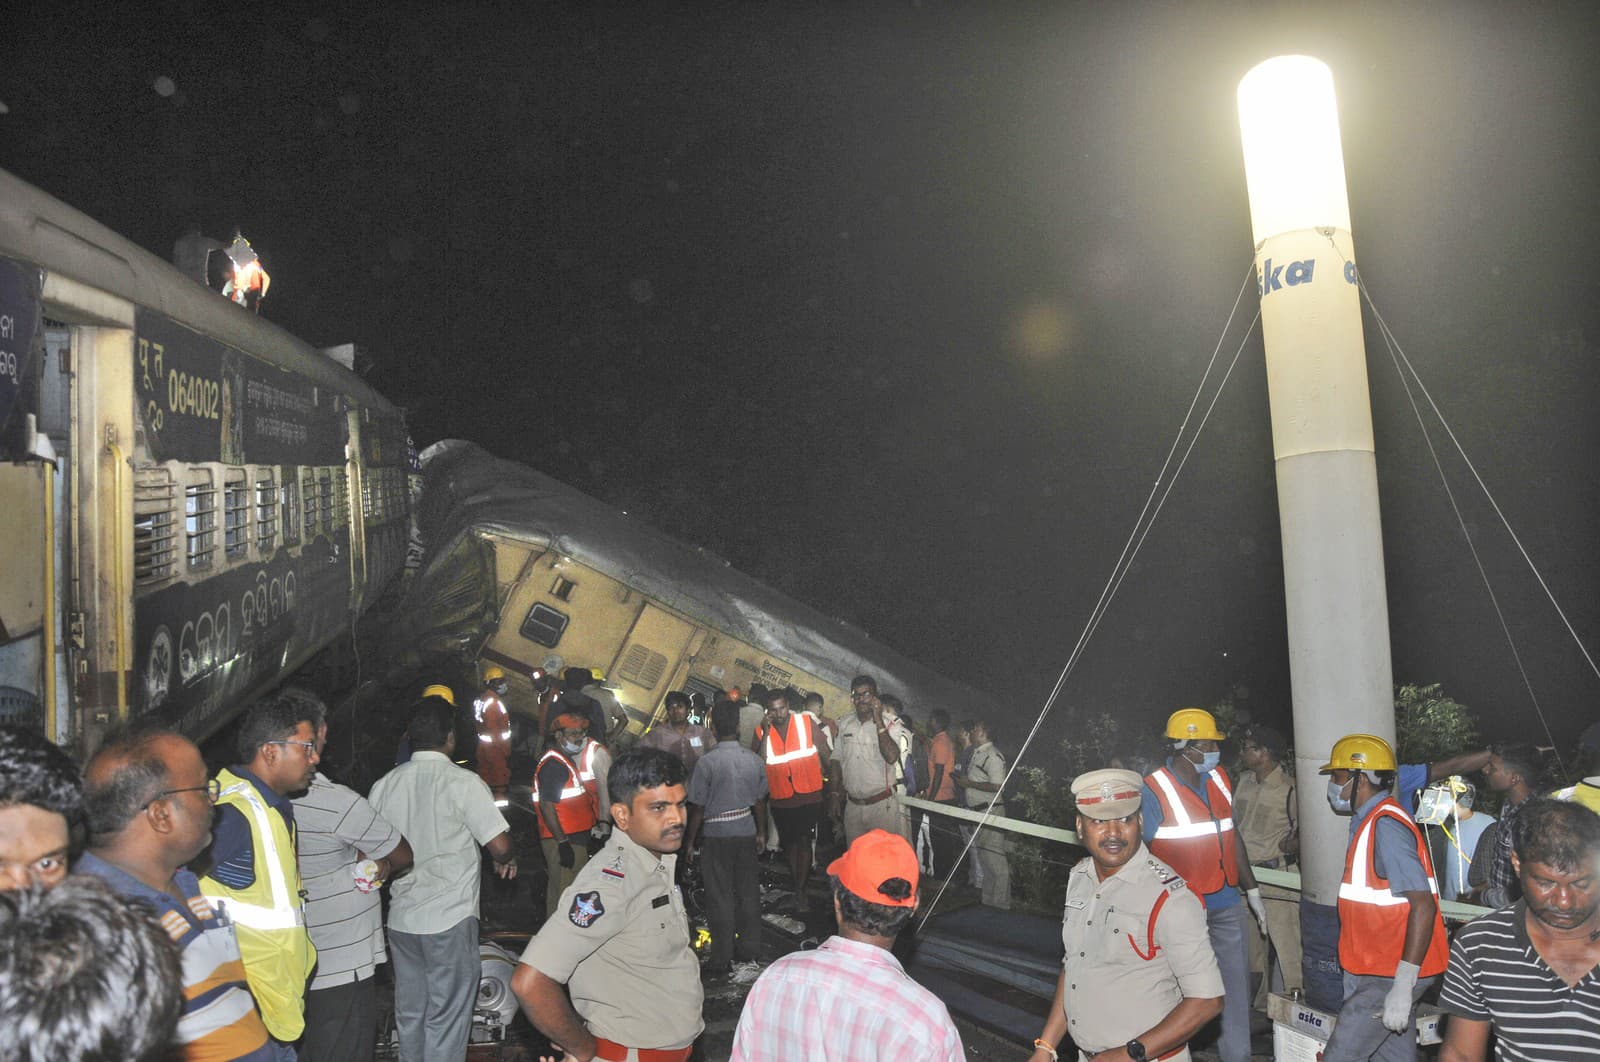 Nehoda vlaku v Indii